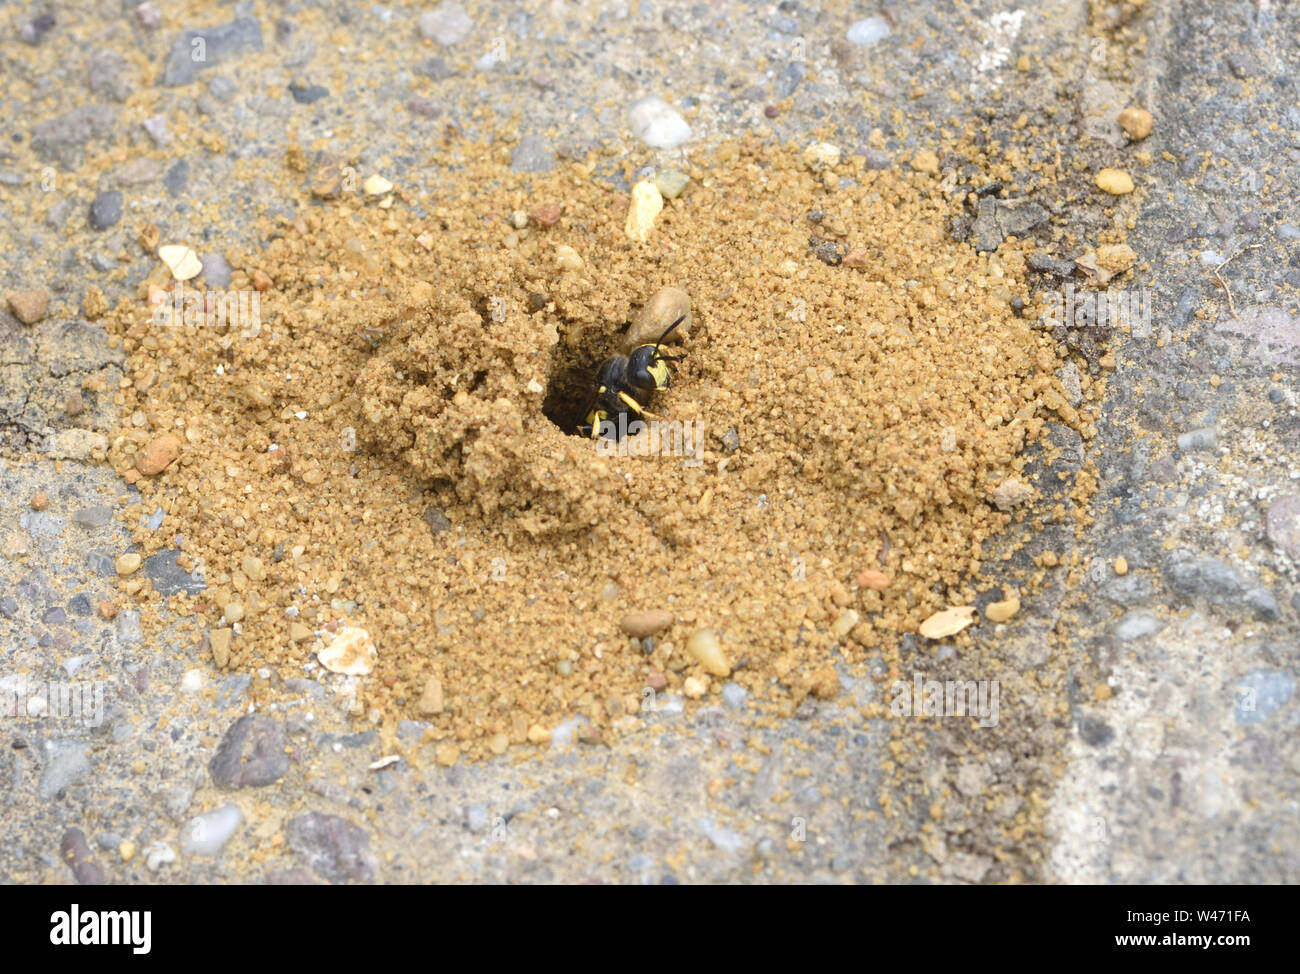 Un ornato tailed digger wasp (Cerceris rybyensis) cautamente emerge dalla sua tana in costruttori' sabbia tra mattoni di pavimentazione. Si tratta probabilmente di impostazione o Foto Stock